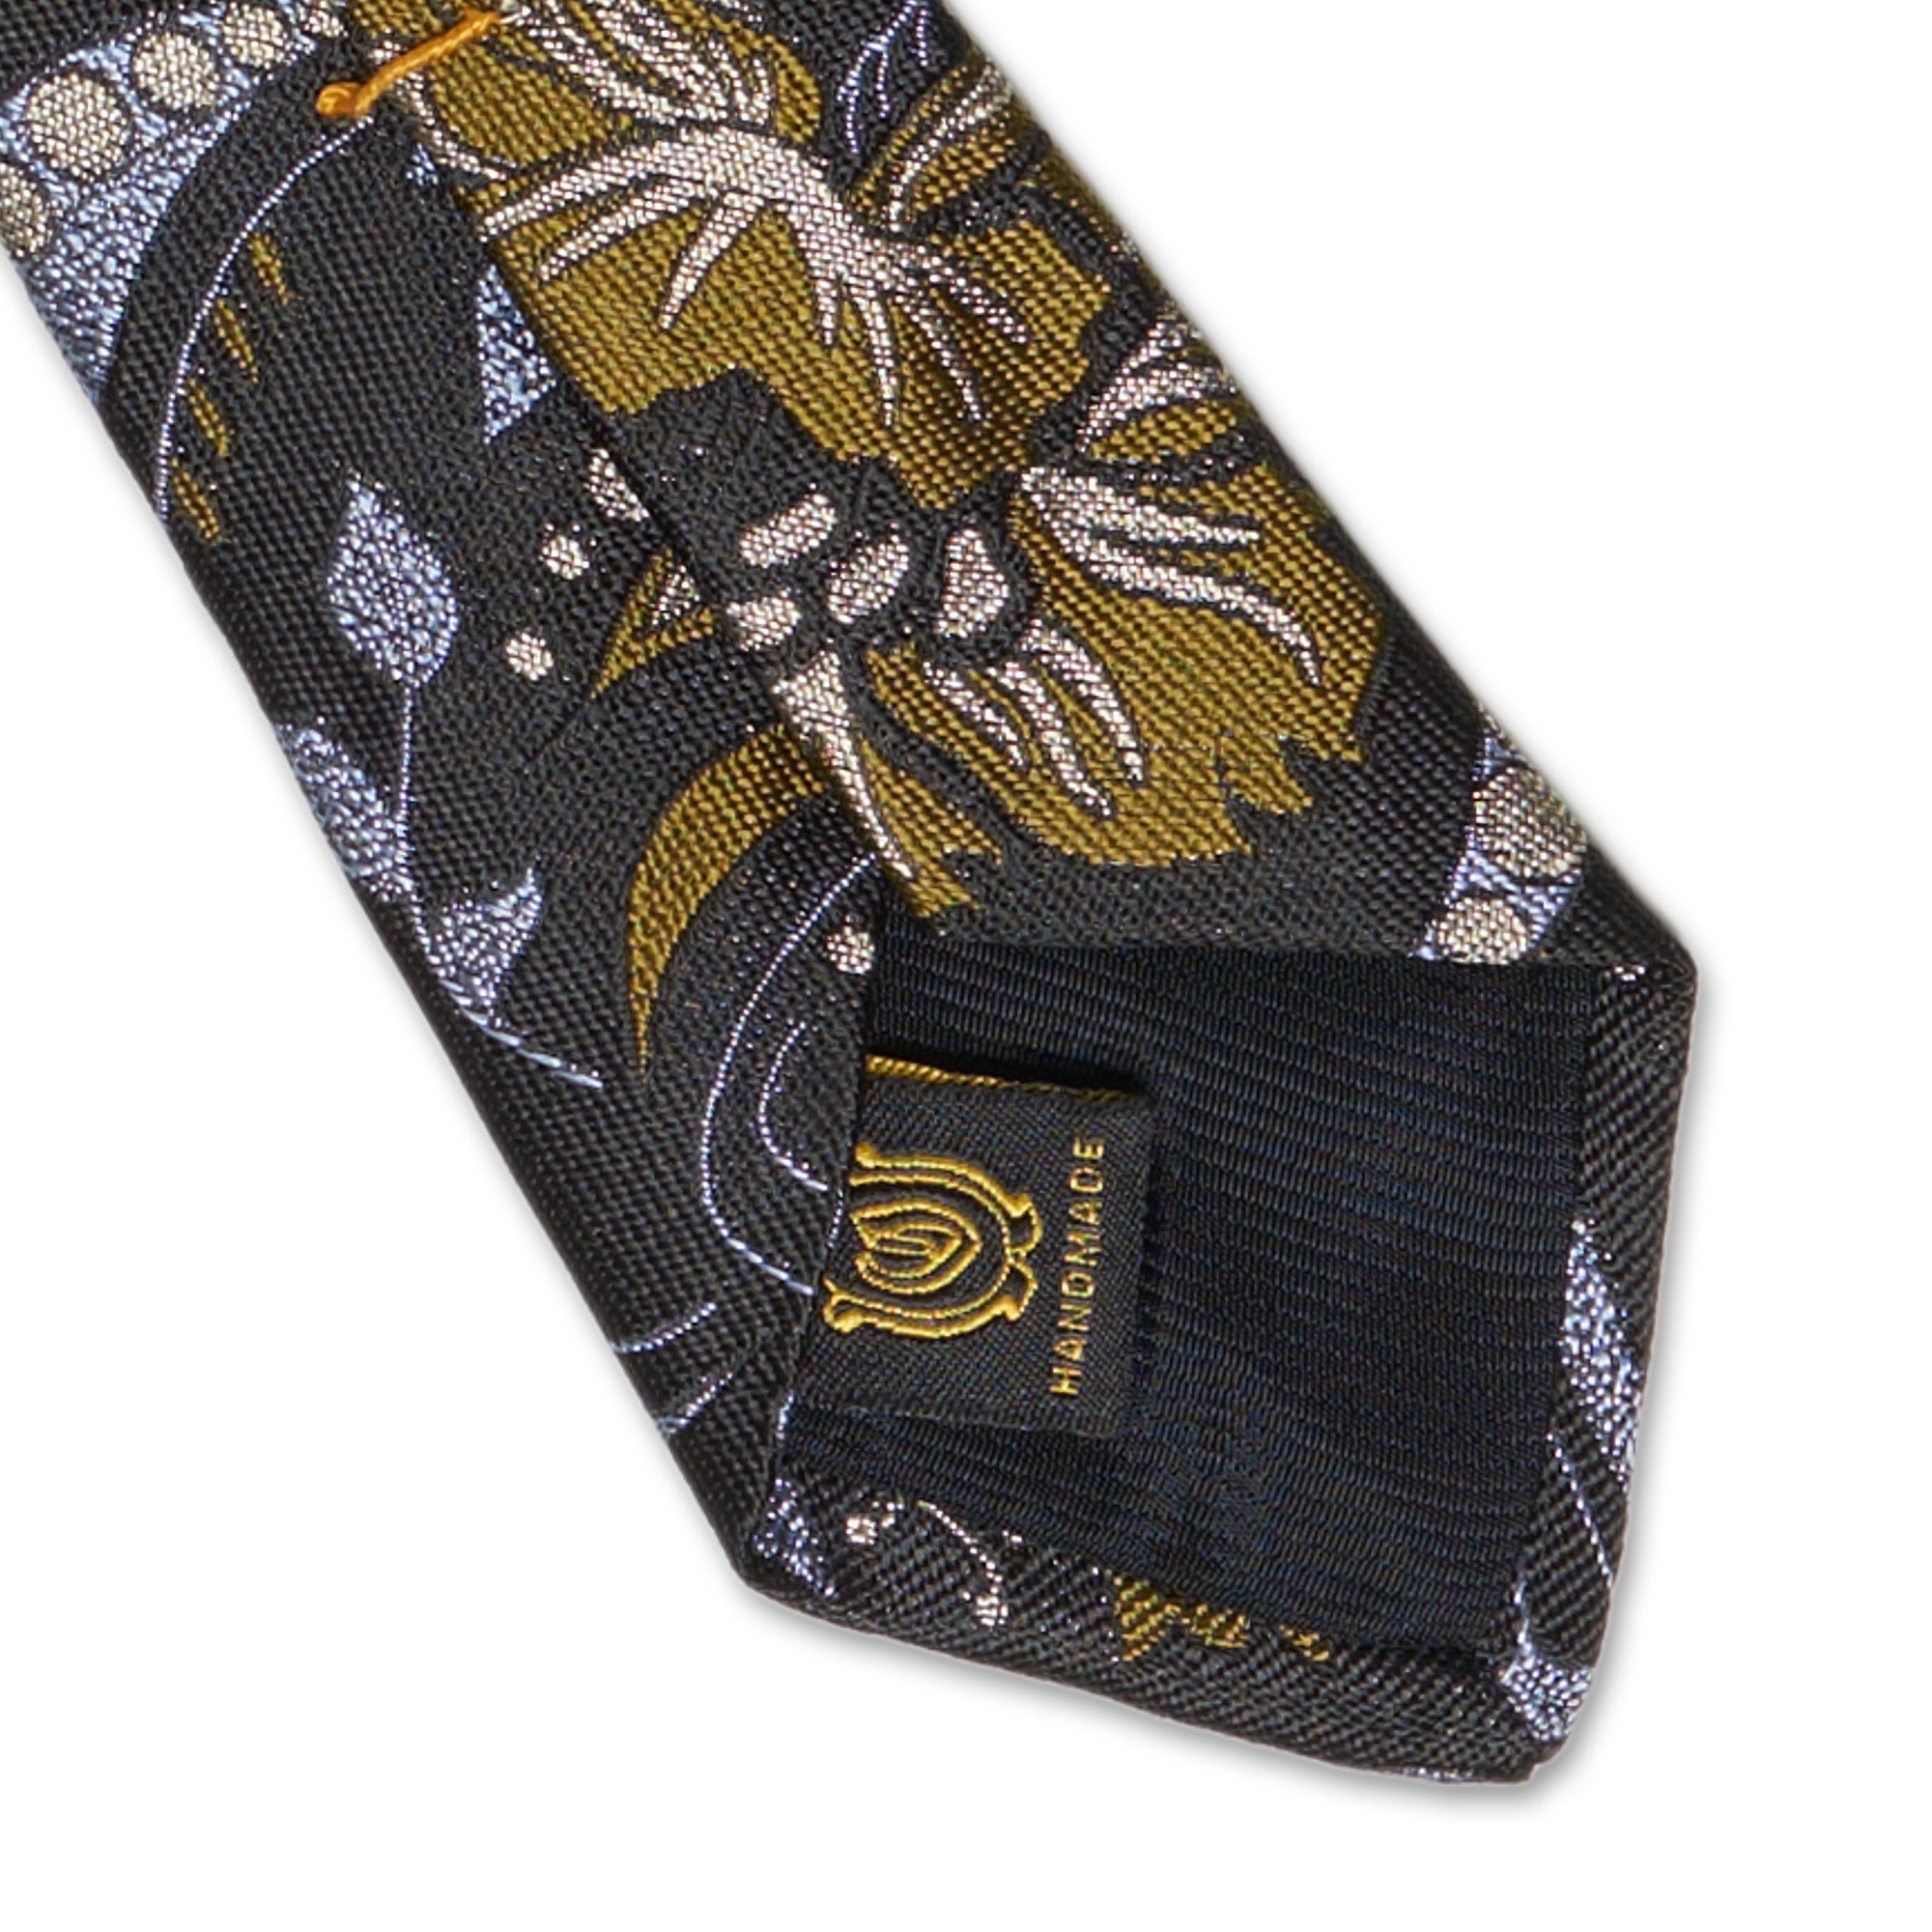 OXXFORD CREST Handmade Black Floral Design Silk Tie